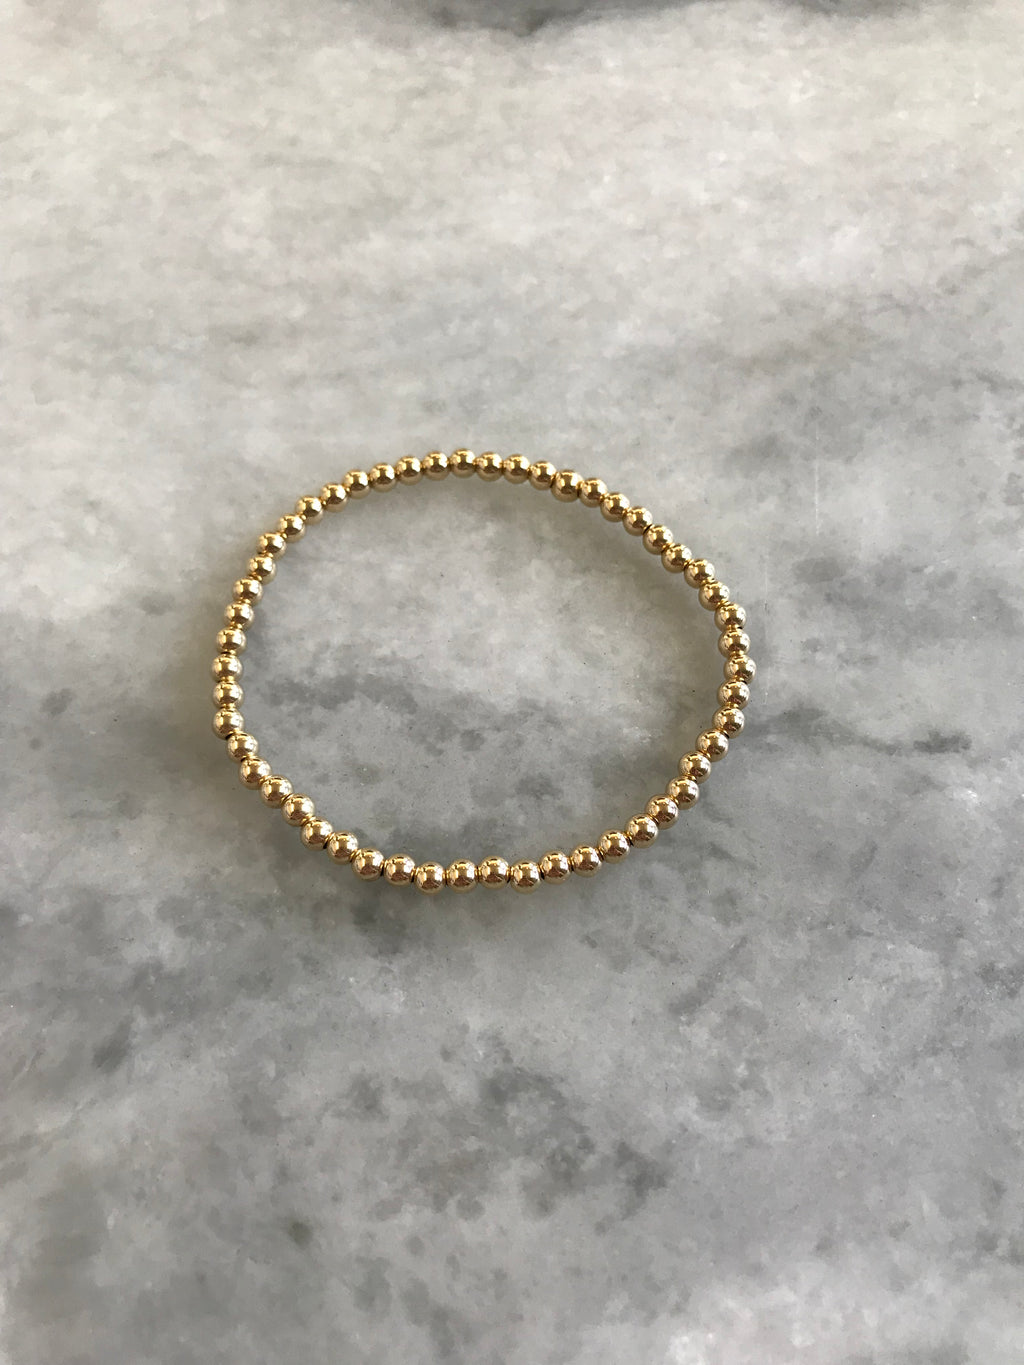 14 Karat Gold Beaded Bracelet - 4 millimeter